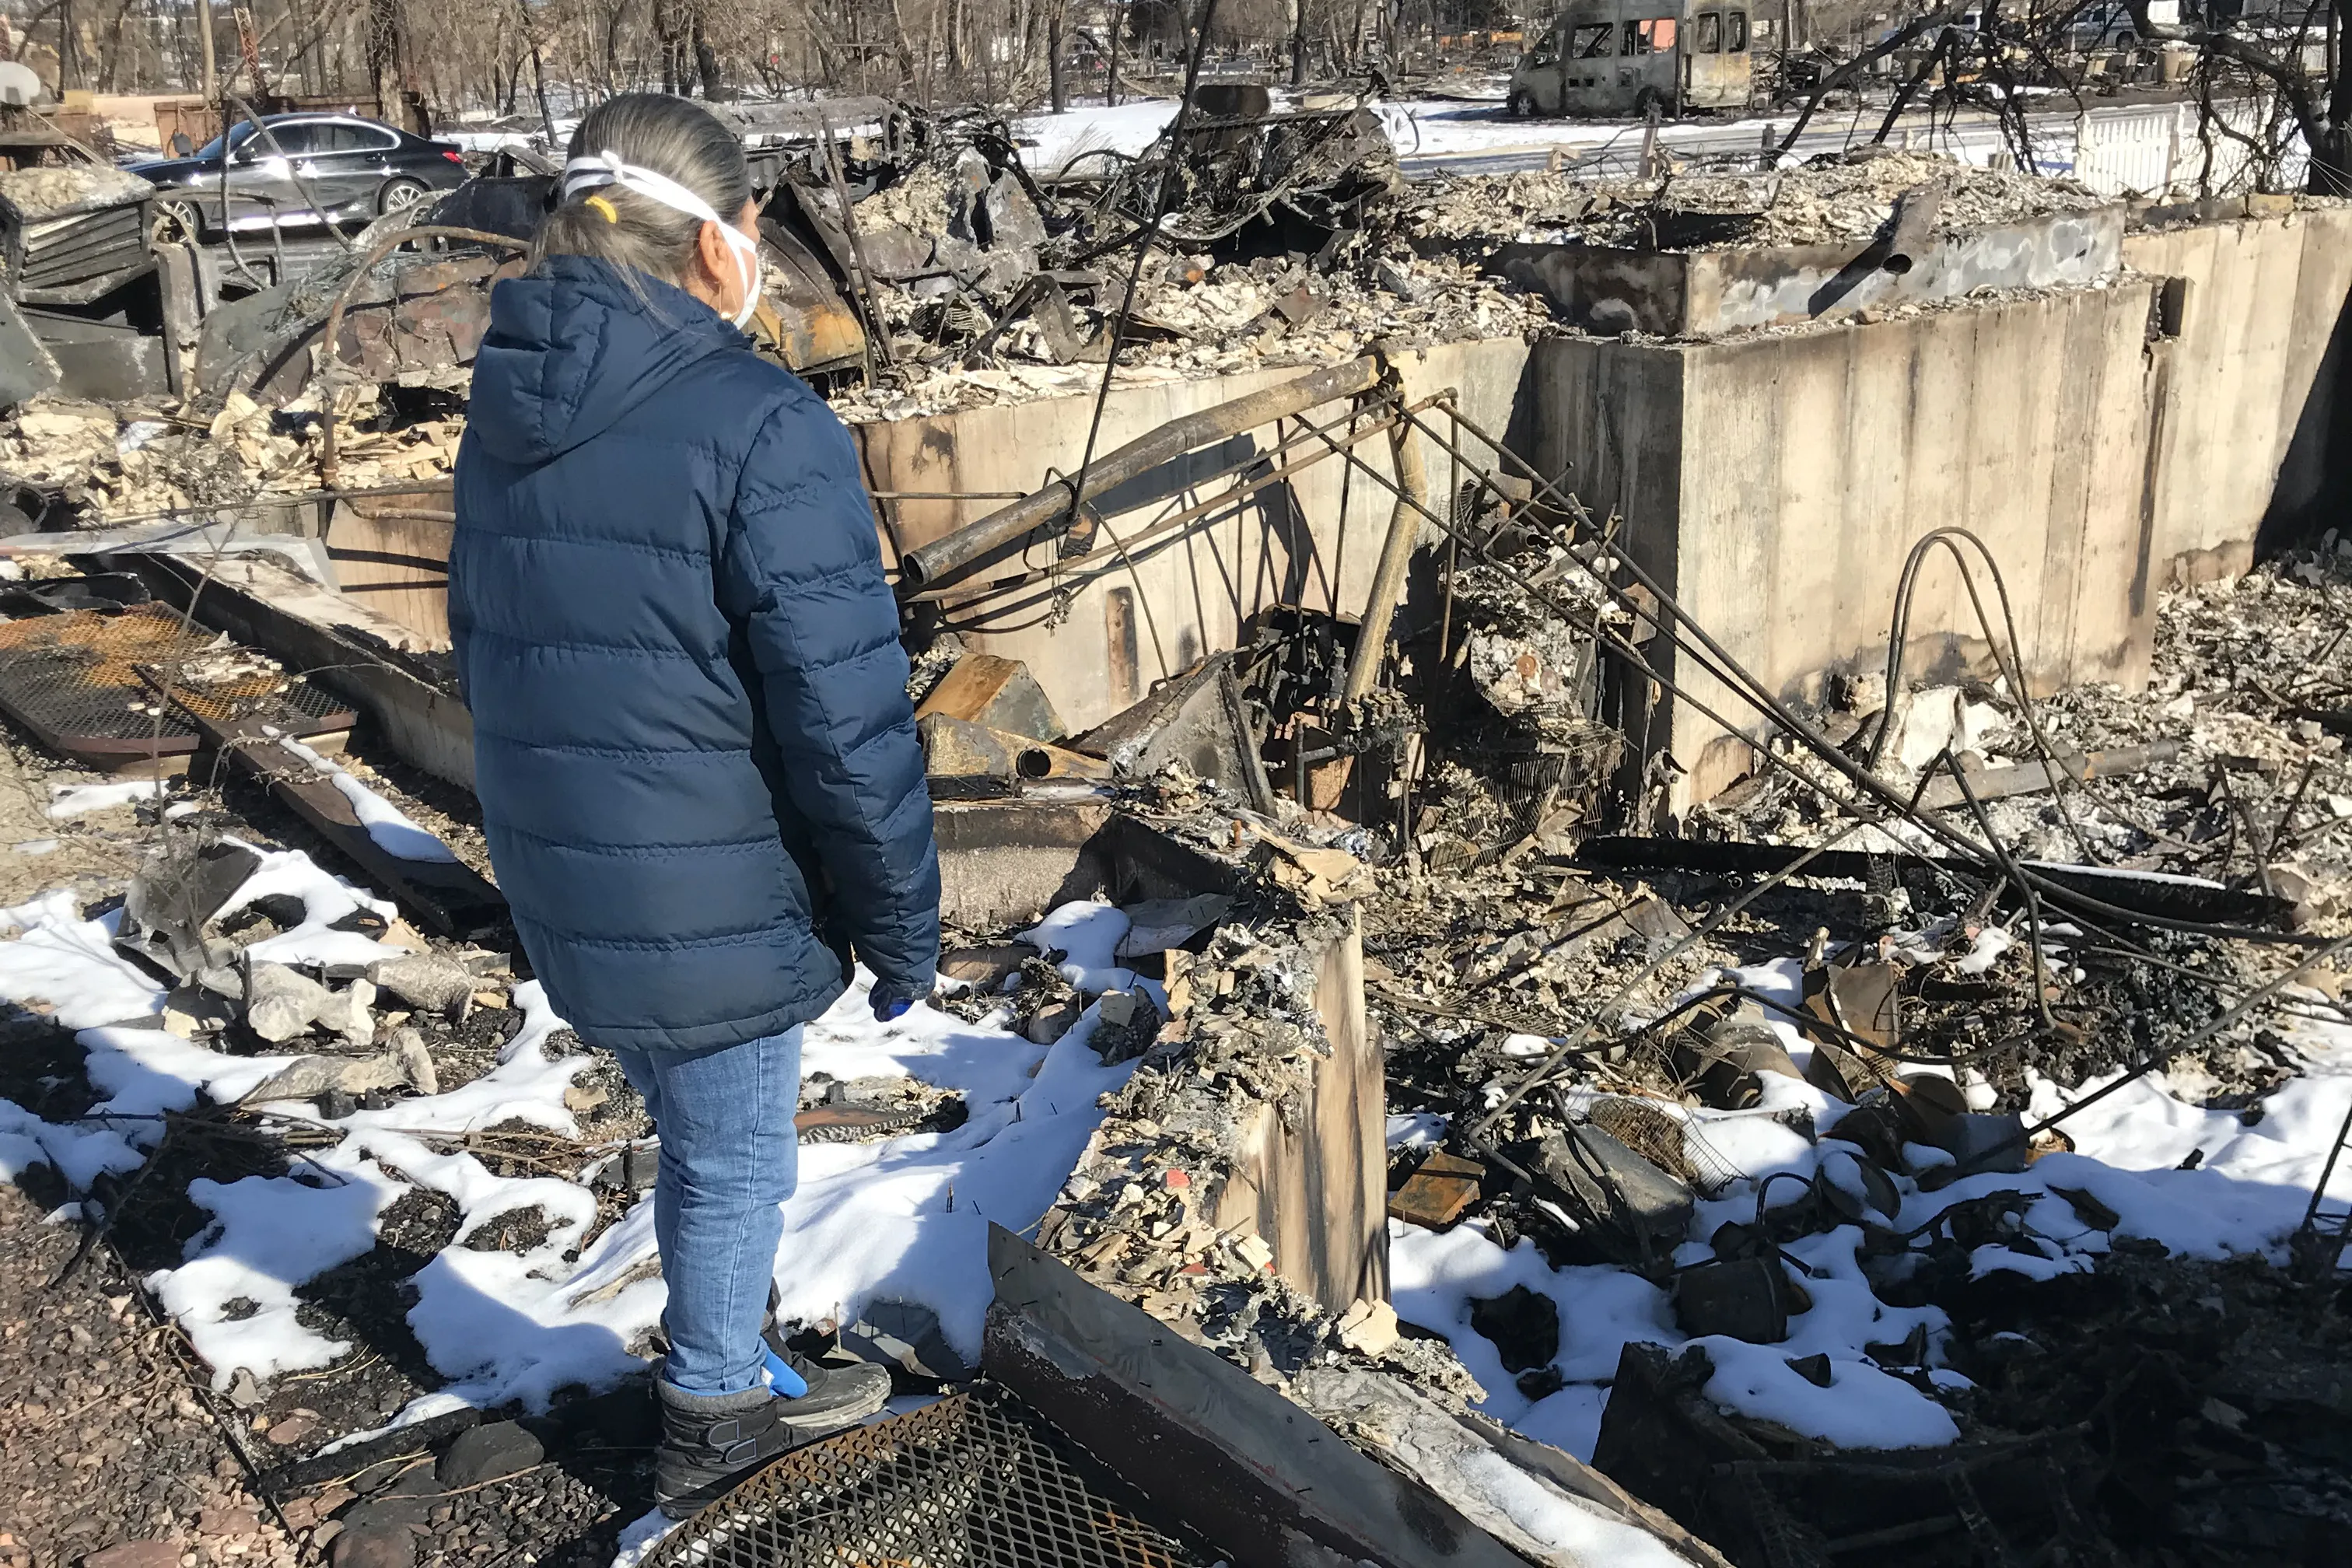 Tina McLaren surveys the burned home of the McLaren family in Superior, Colorado after the Dec. 30, 2021 Marshall Fire. Bob and Tina McLaren